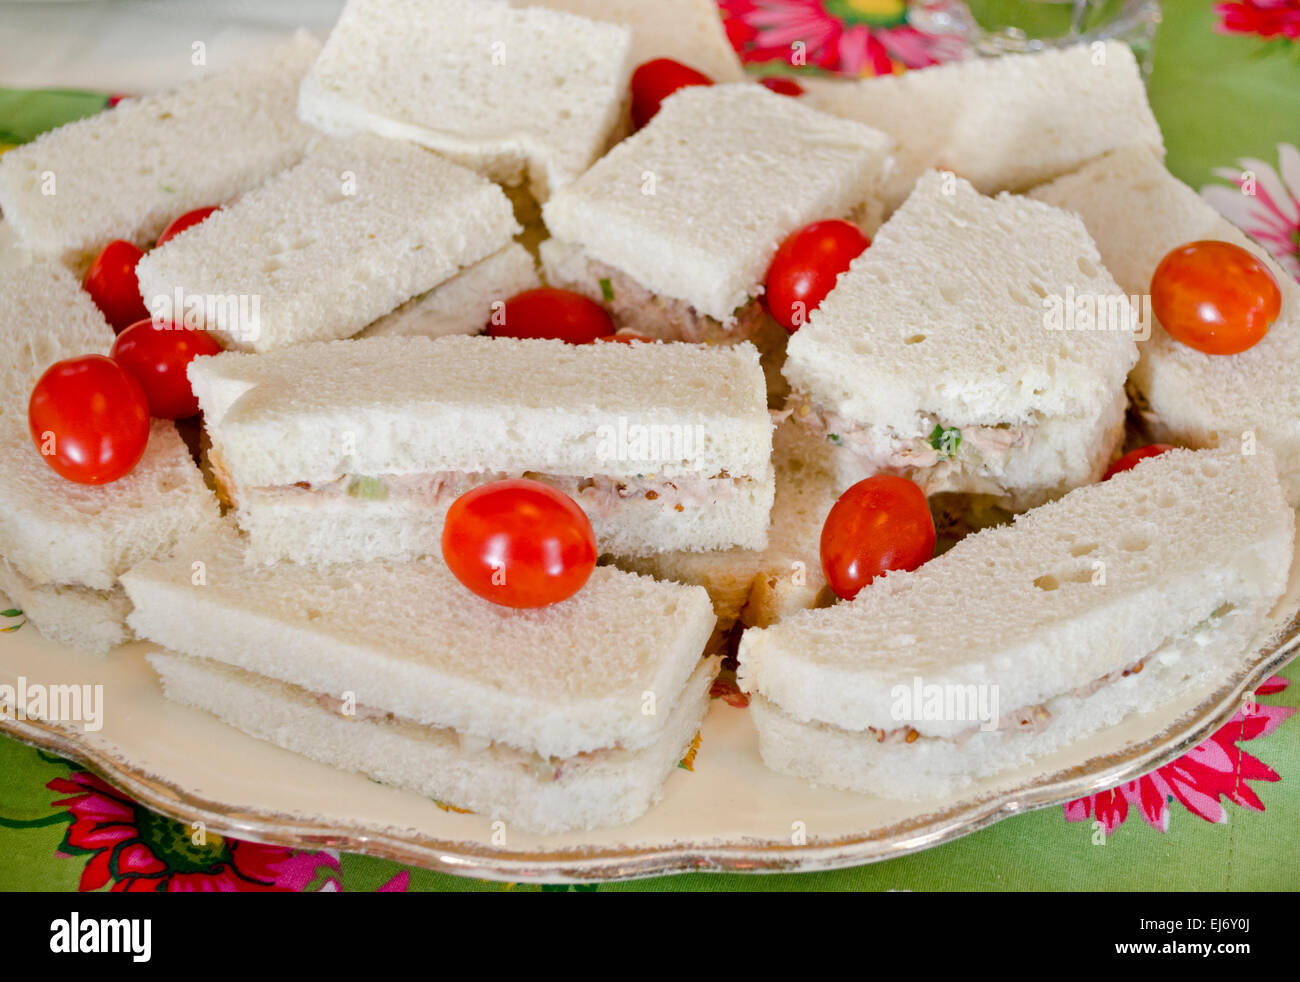 Crustless Thunfisch-Sandwiches mit Trauben Tomaten auf einem Teller für einen Nachmittagstee oder Mittagessen setzen. Stockfoto